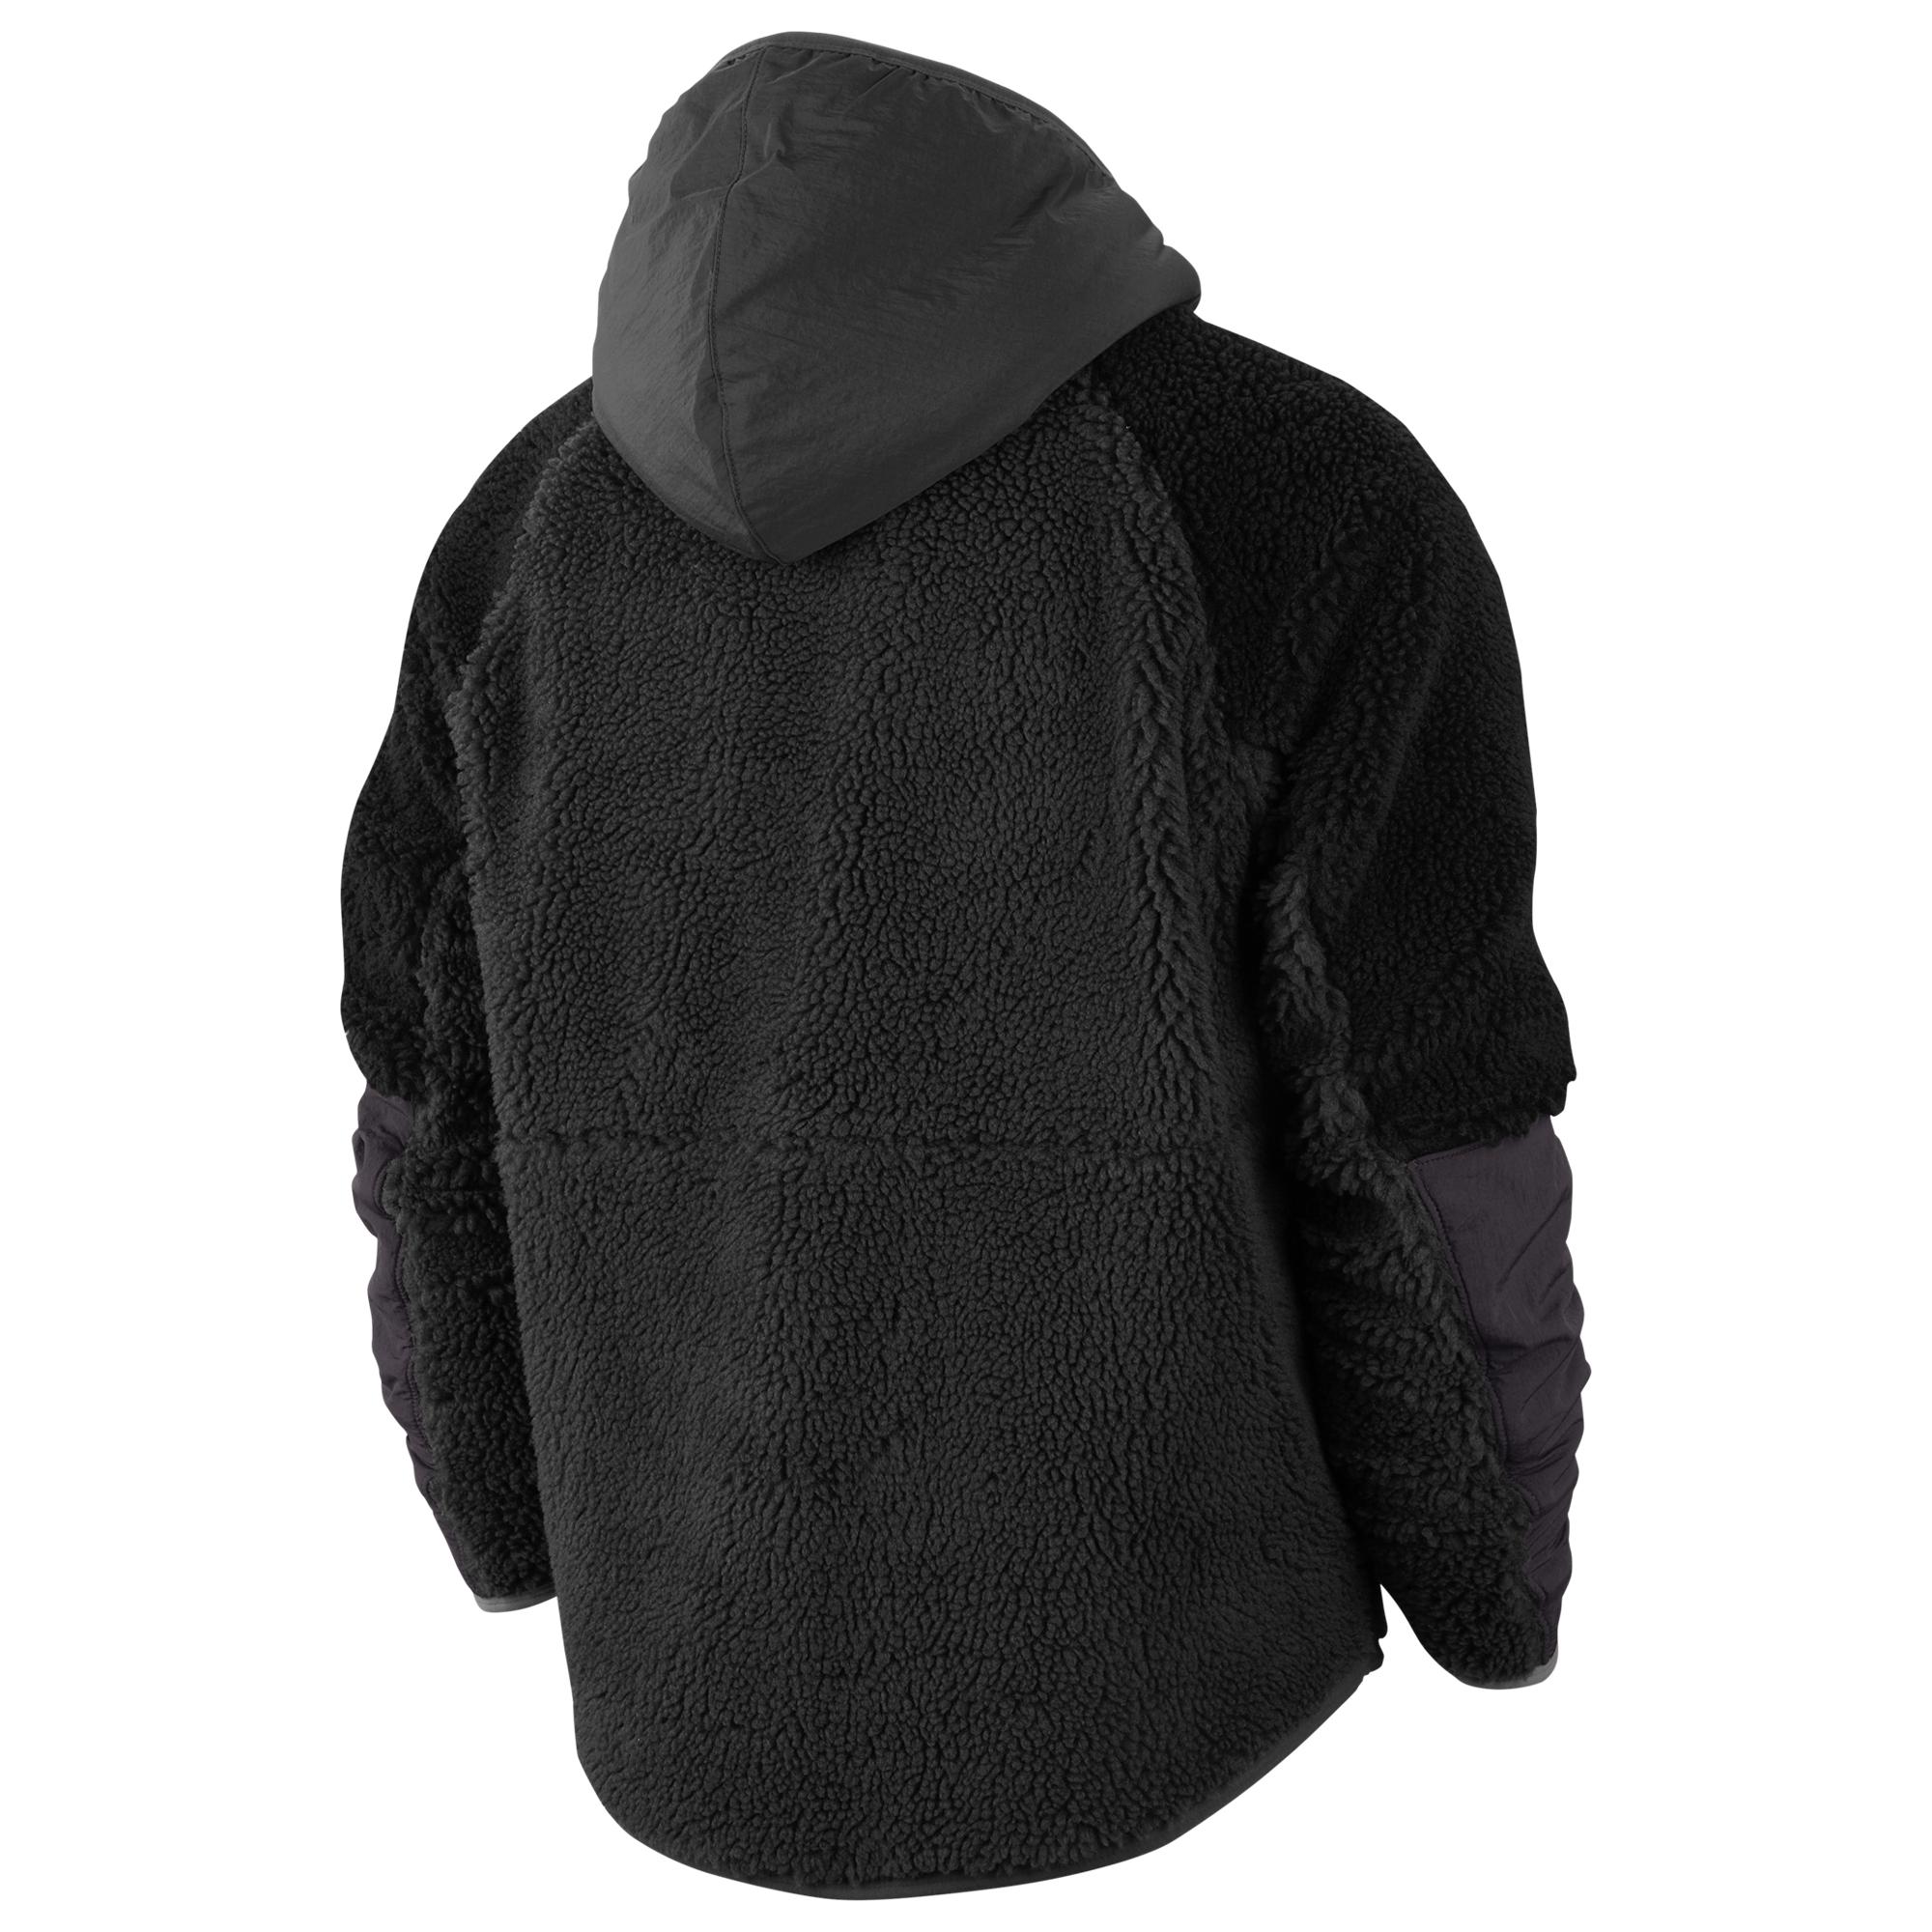 Nike Fleece Heritage Essentials Half Zip Sherpa Jacket in Black for Men -  Lyst